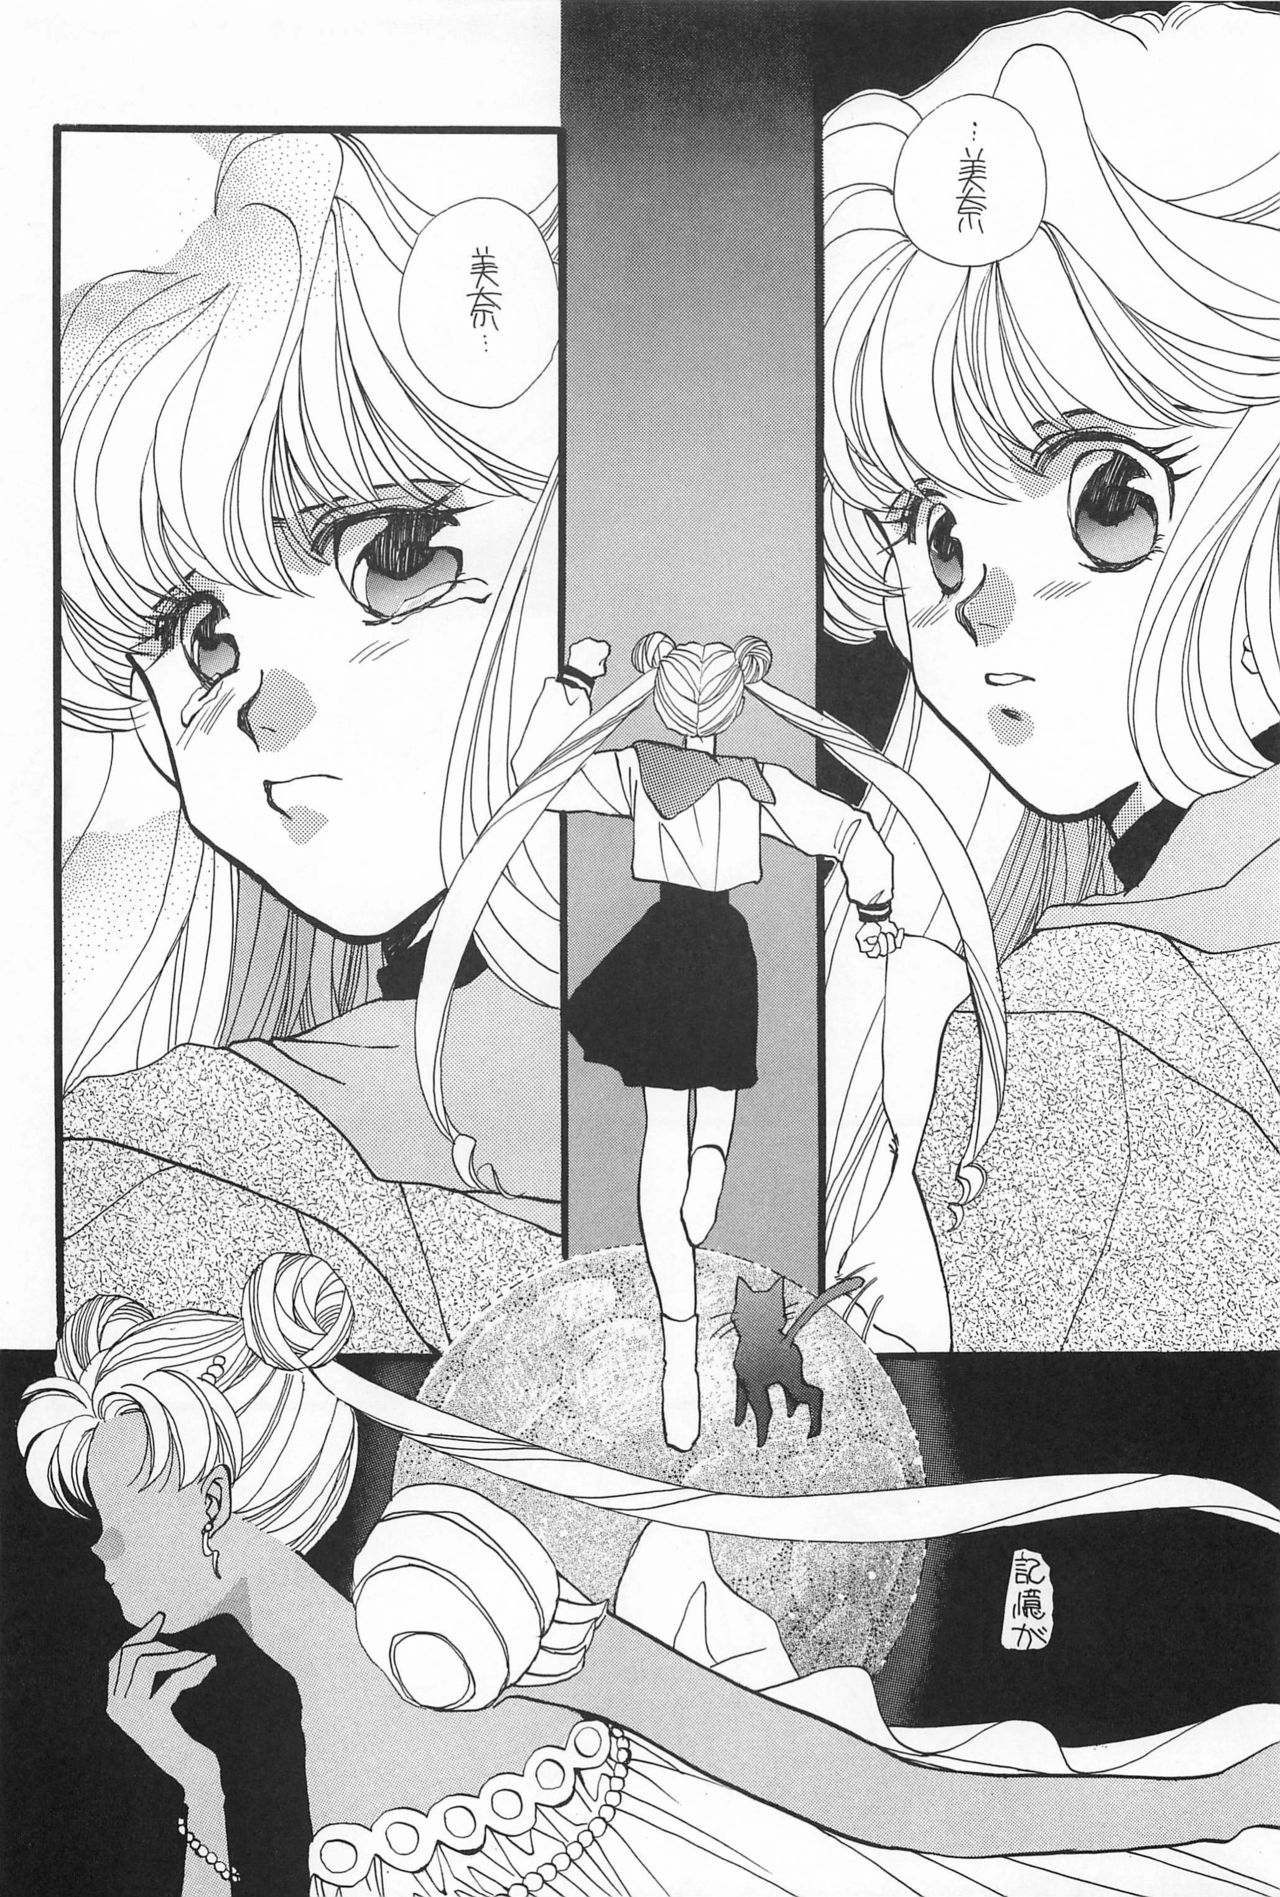 [Hello World (Muttri Moony)] Kaze no You ni Yume no You ni - Sailor Moon Collection (Sailor Moon) 87